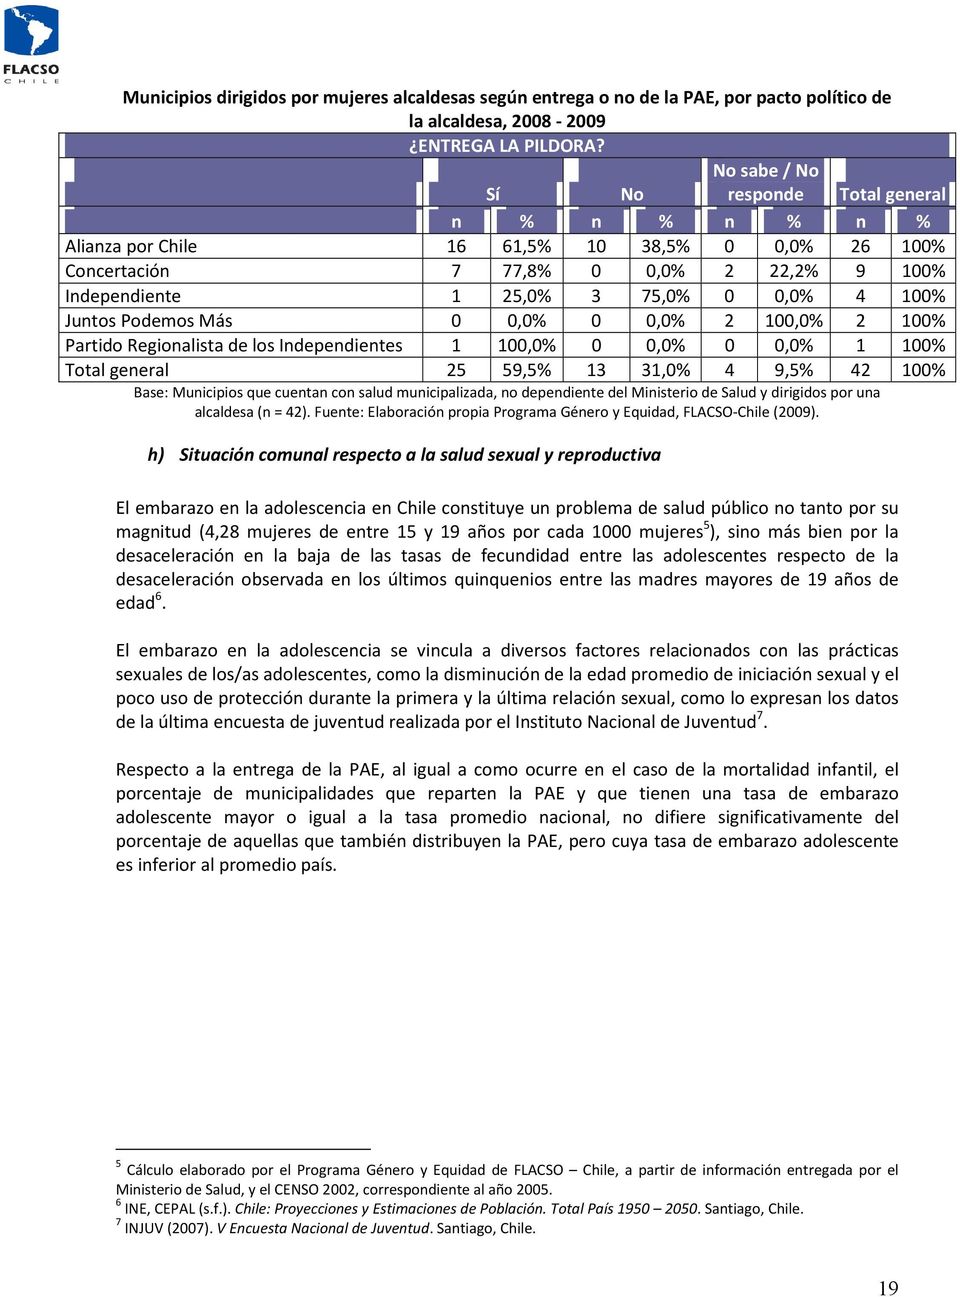 Juntos Podemos Más 0 0,0% 0 0,0% 2 100,0% 2 100% Partido Regionalista de los Independientes 1 100,0% 0 0,0% 0 0,0% 1 100% Total general 25 59,5% 13 31,0% 4 9,5% 42 100% Base: Municipios que cuentan